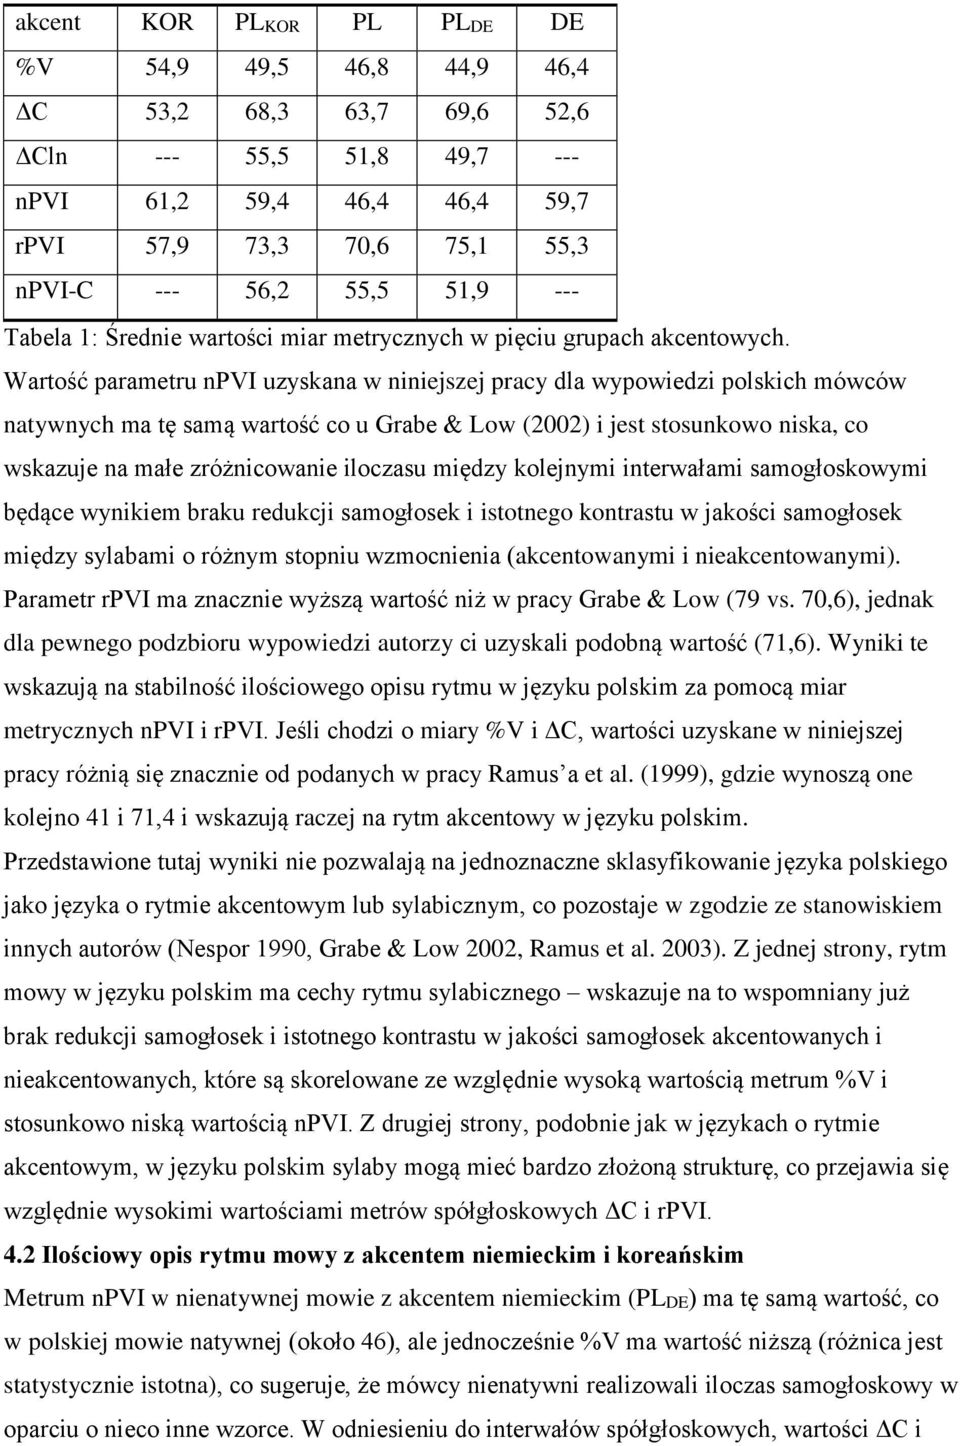 Wartość parametru npvi uzyskana w niniejszej pracy dla wypowiedzi polskich mówców natywnych ma tę samą wartość co u Grabe & Low (2002) i jest stosunkowo niska, co wskazuje na małe zróżnicowanie